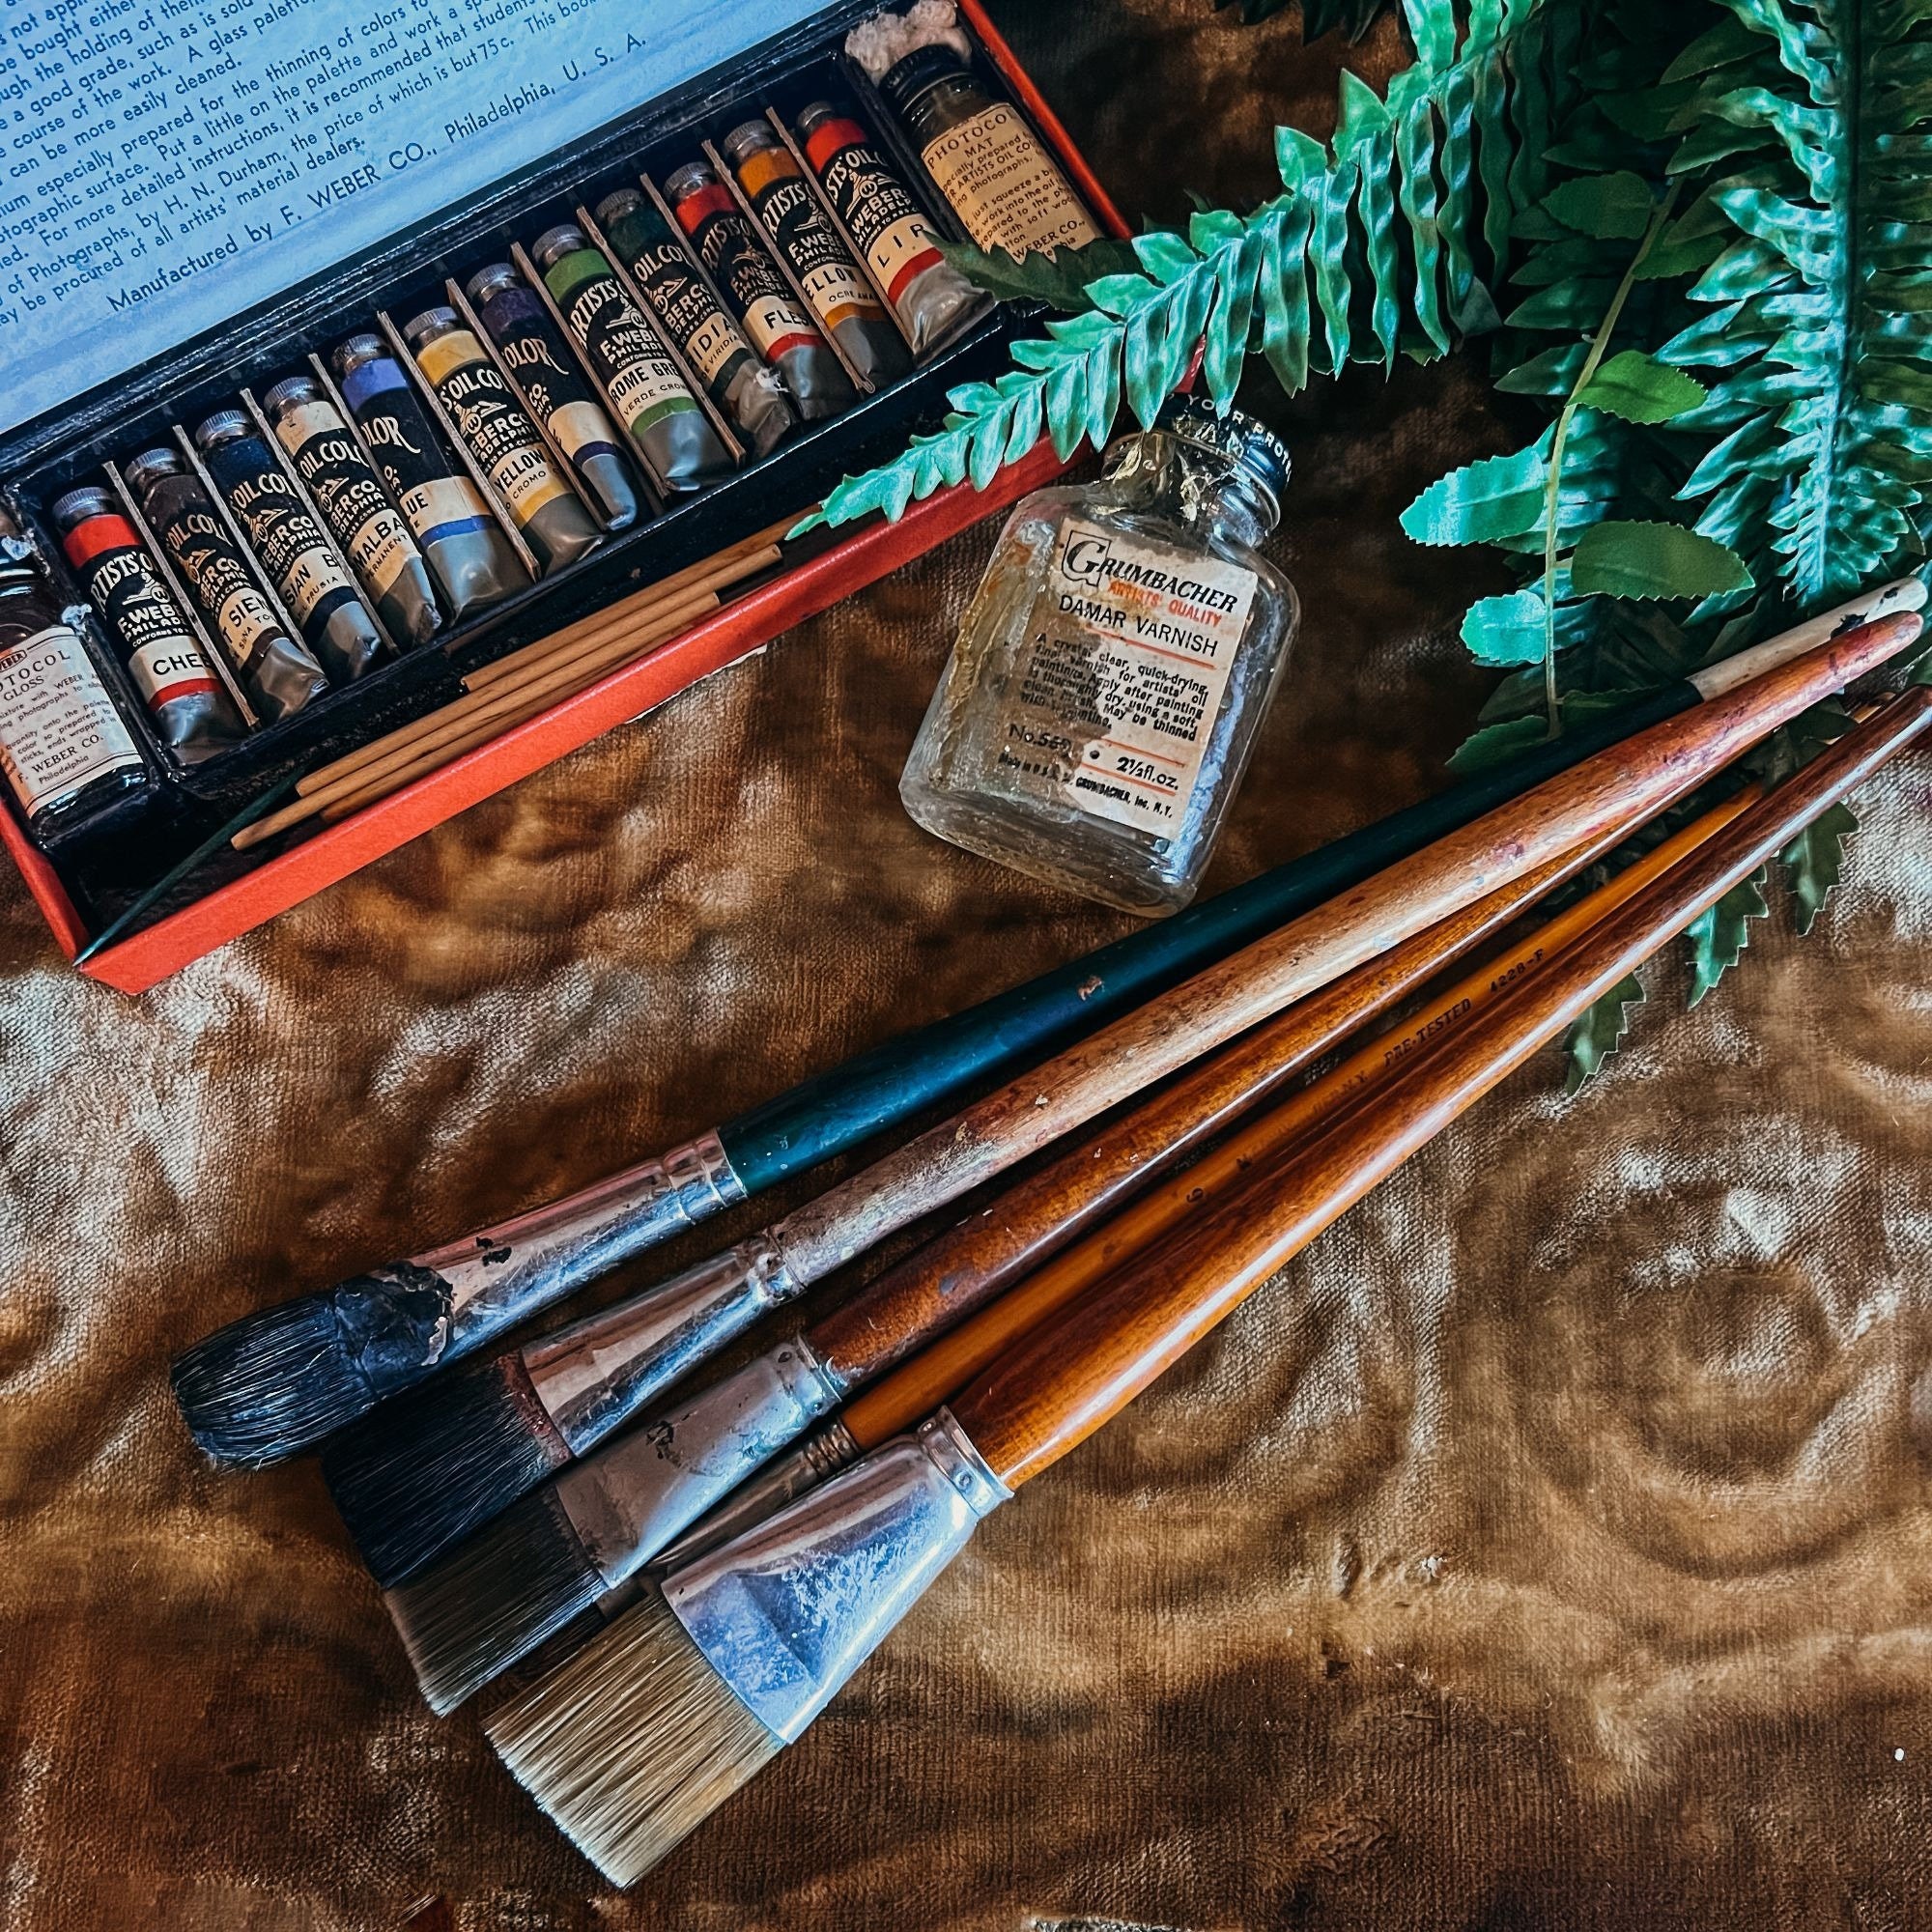 Paint Brush Holder, Paint Brush Rack, Hobby Tool Holder, Hobby